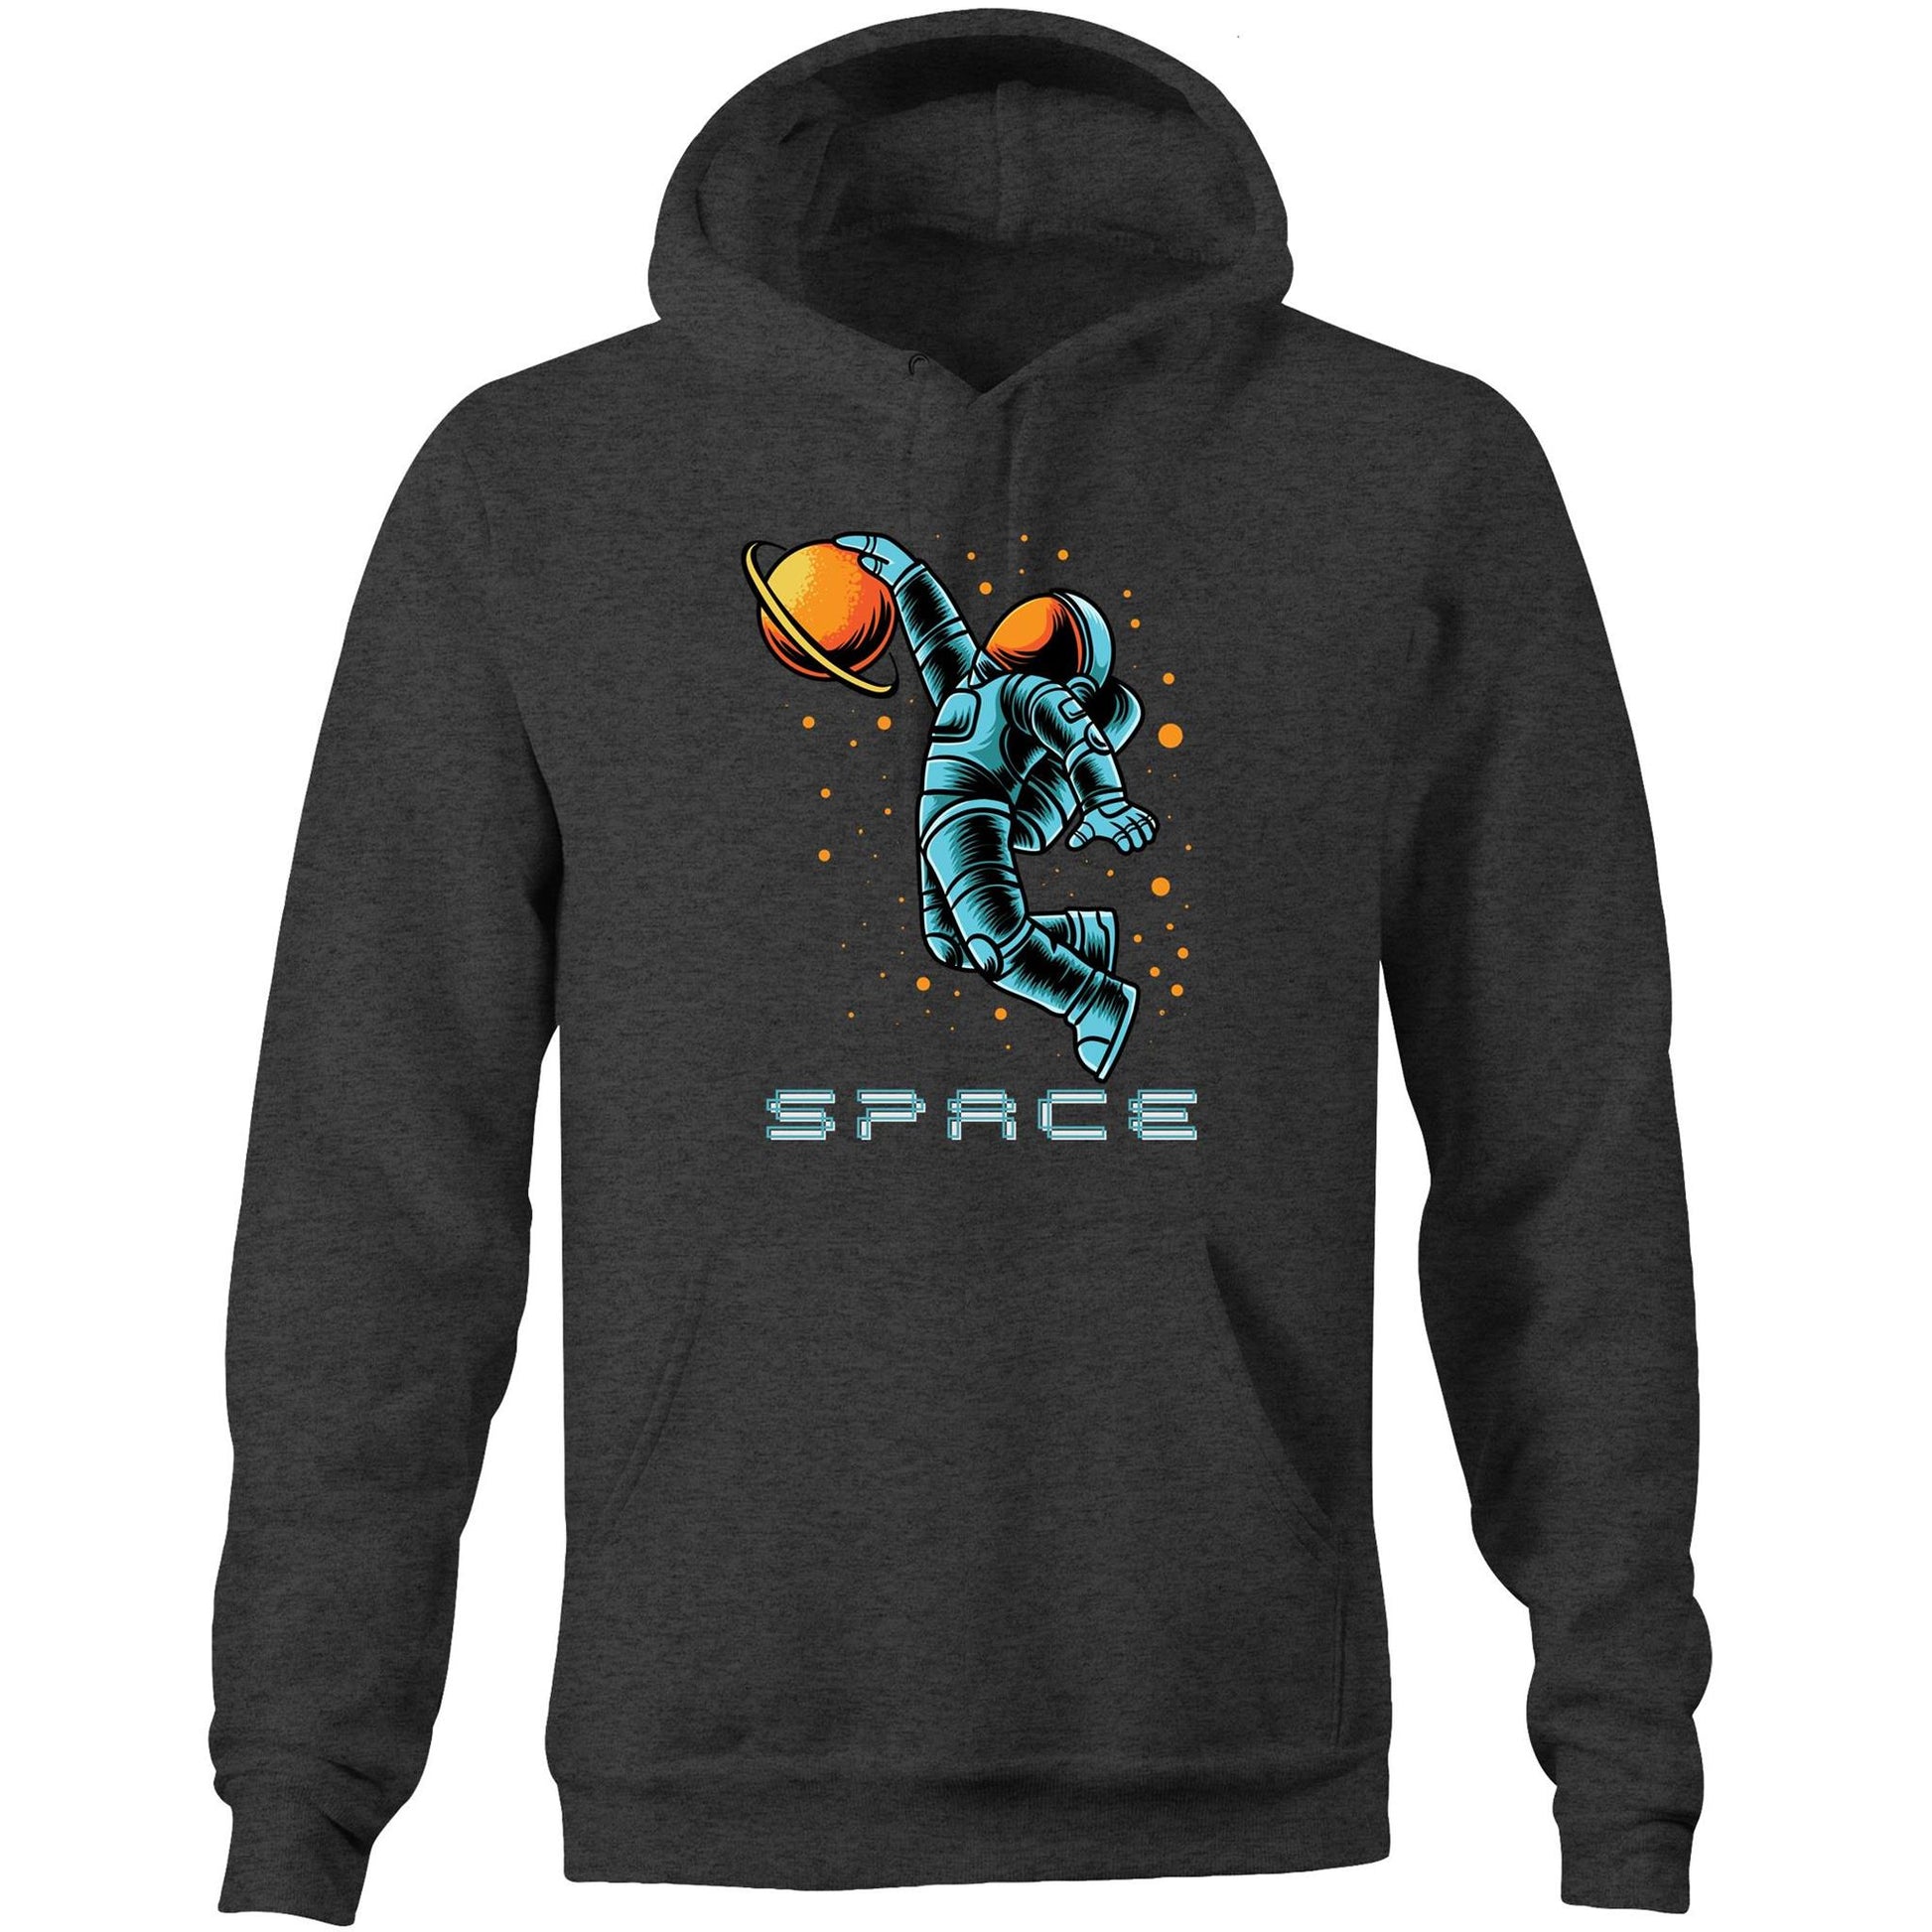 Astronaut Baksetball - Pocket Hoodie Sweatshirt Asphalt Marle Heavyweight Hoodie Space